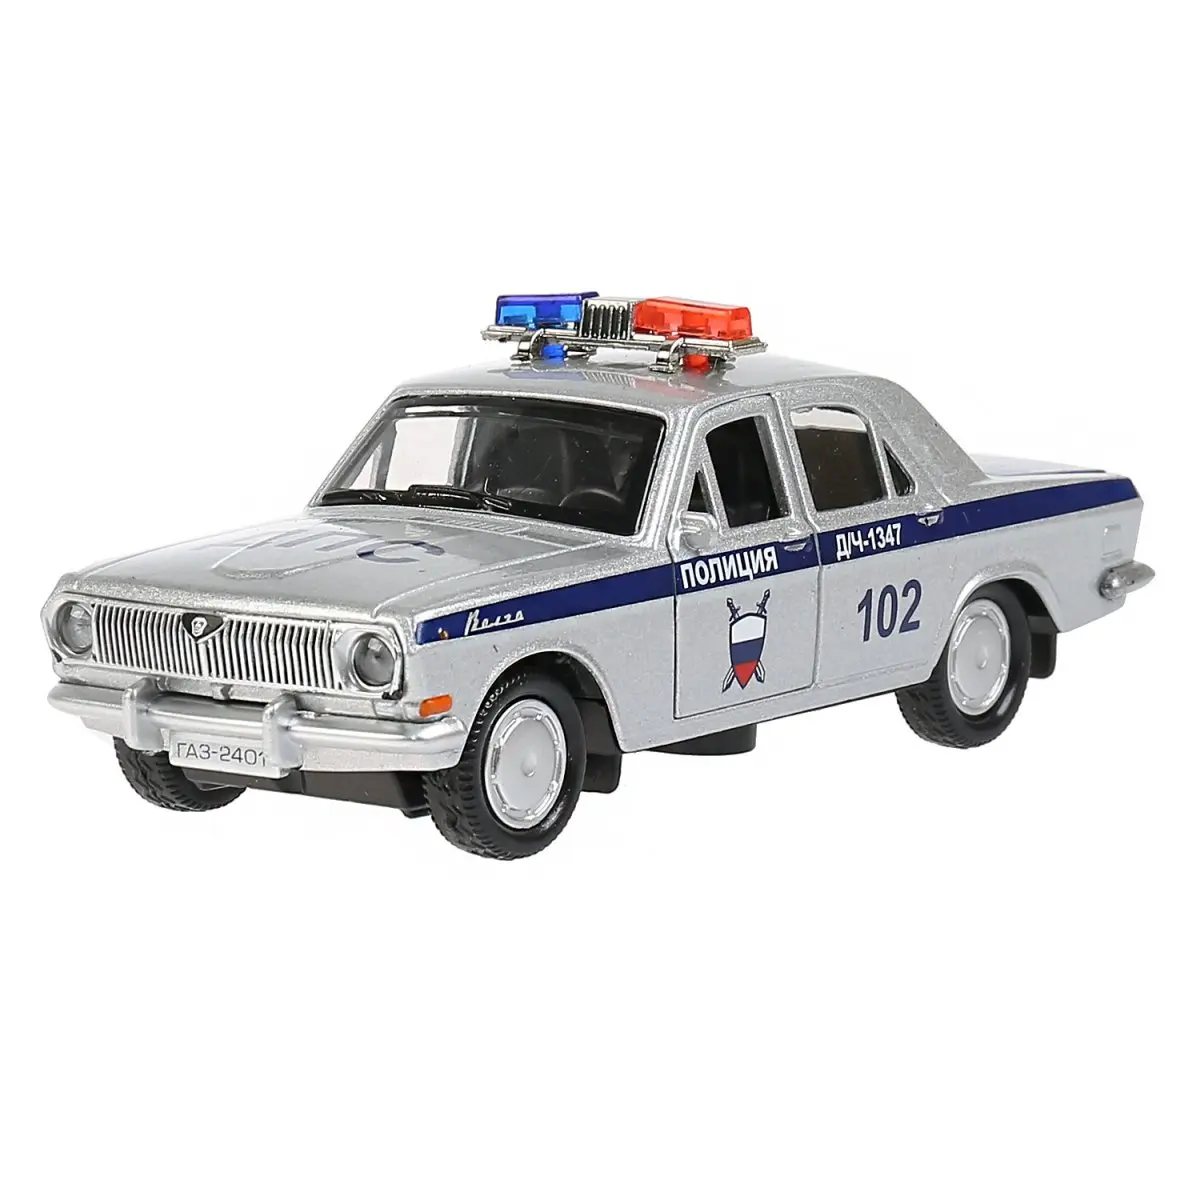 Волга ГАЗ-2401 Полиция - фото